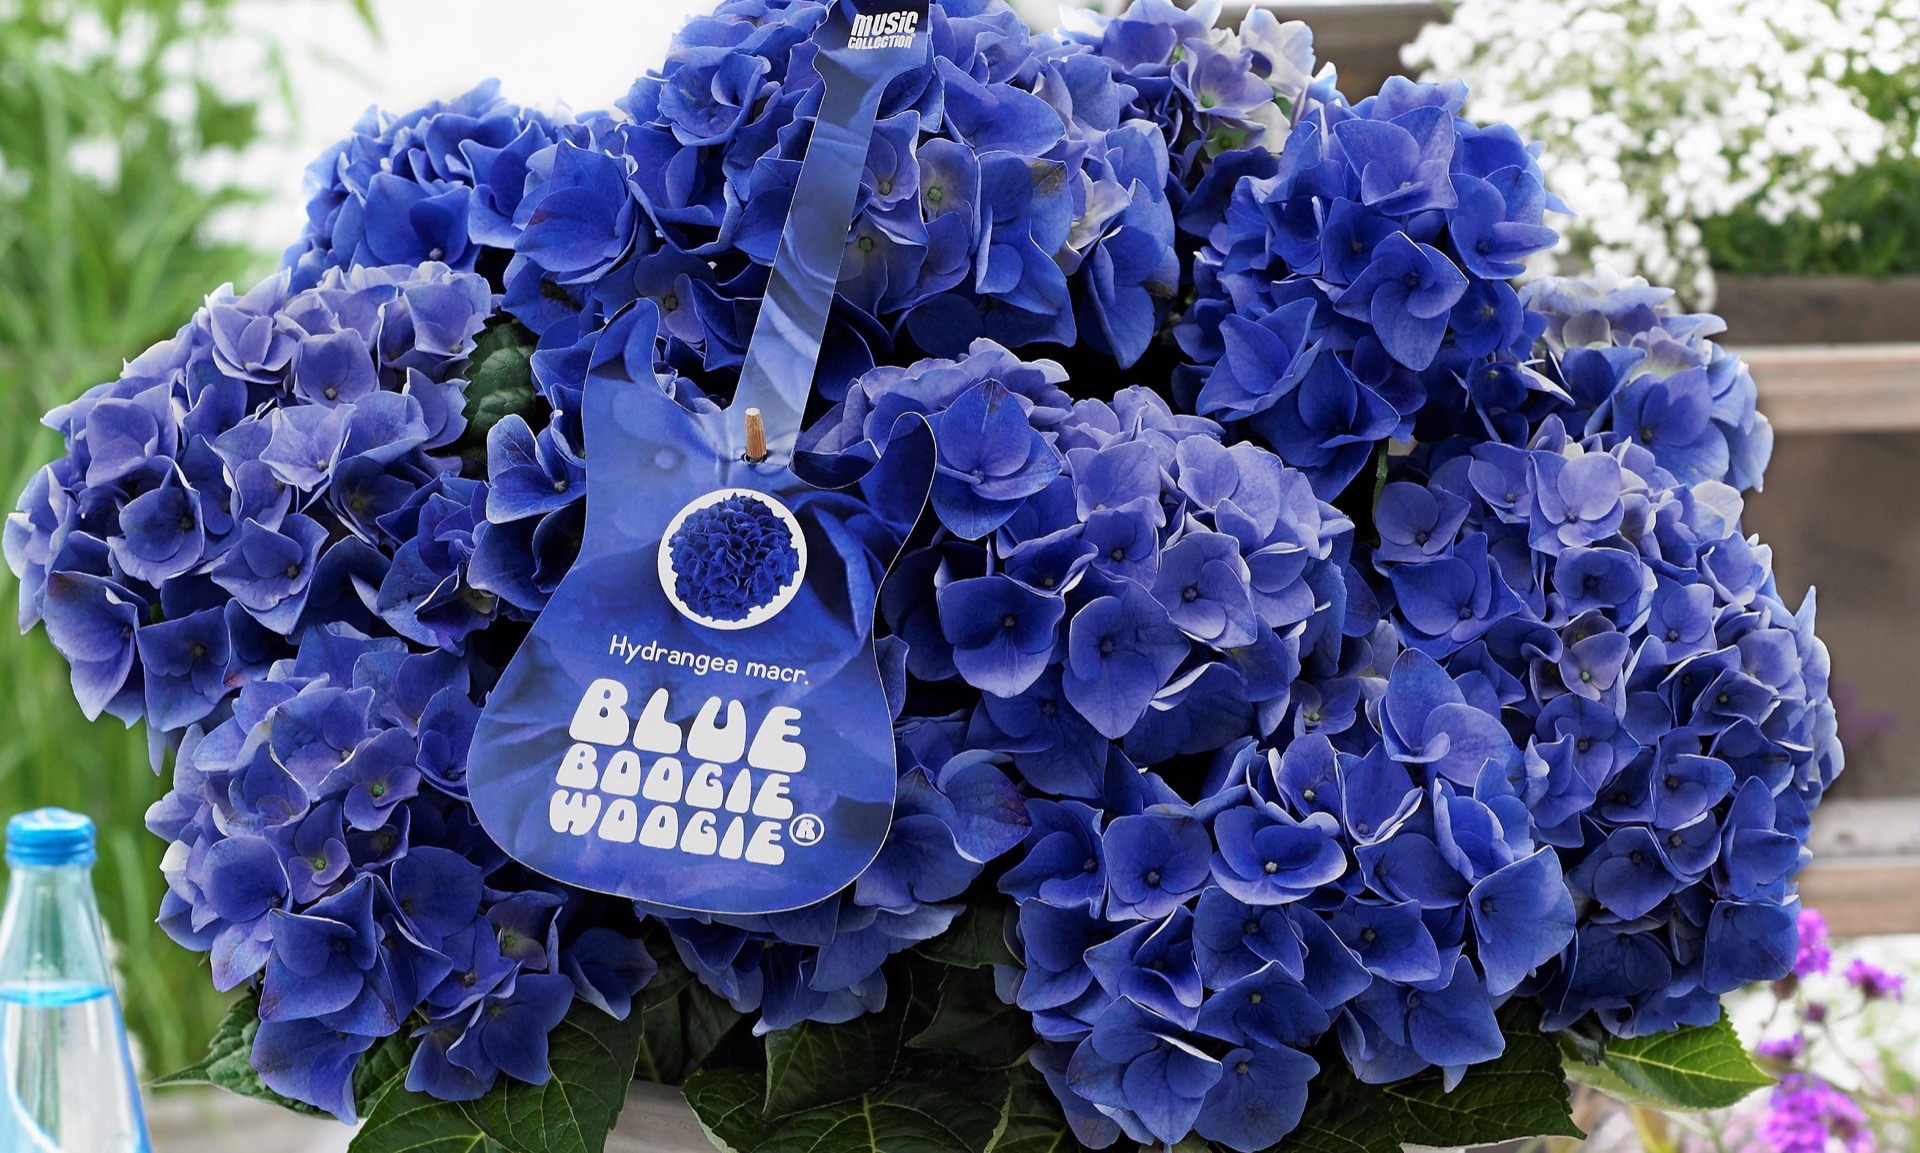 Blue Flowering Hydrangea